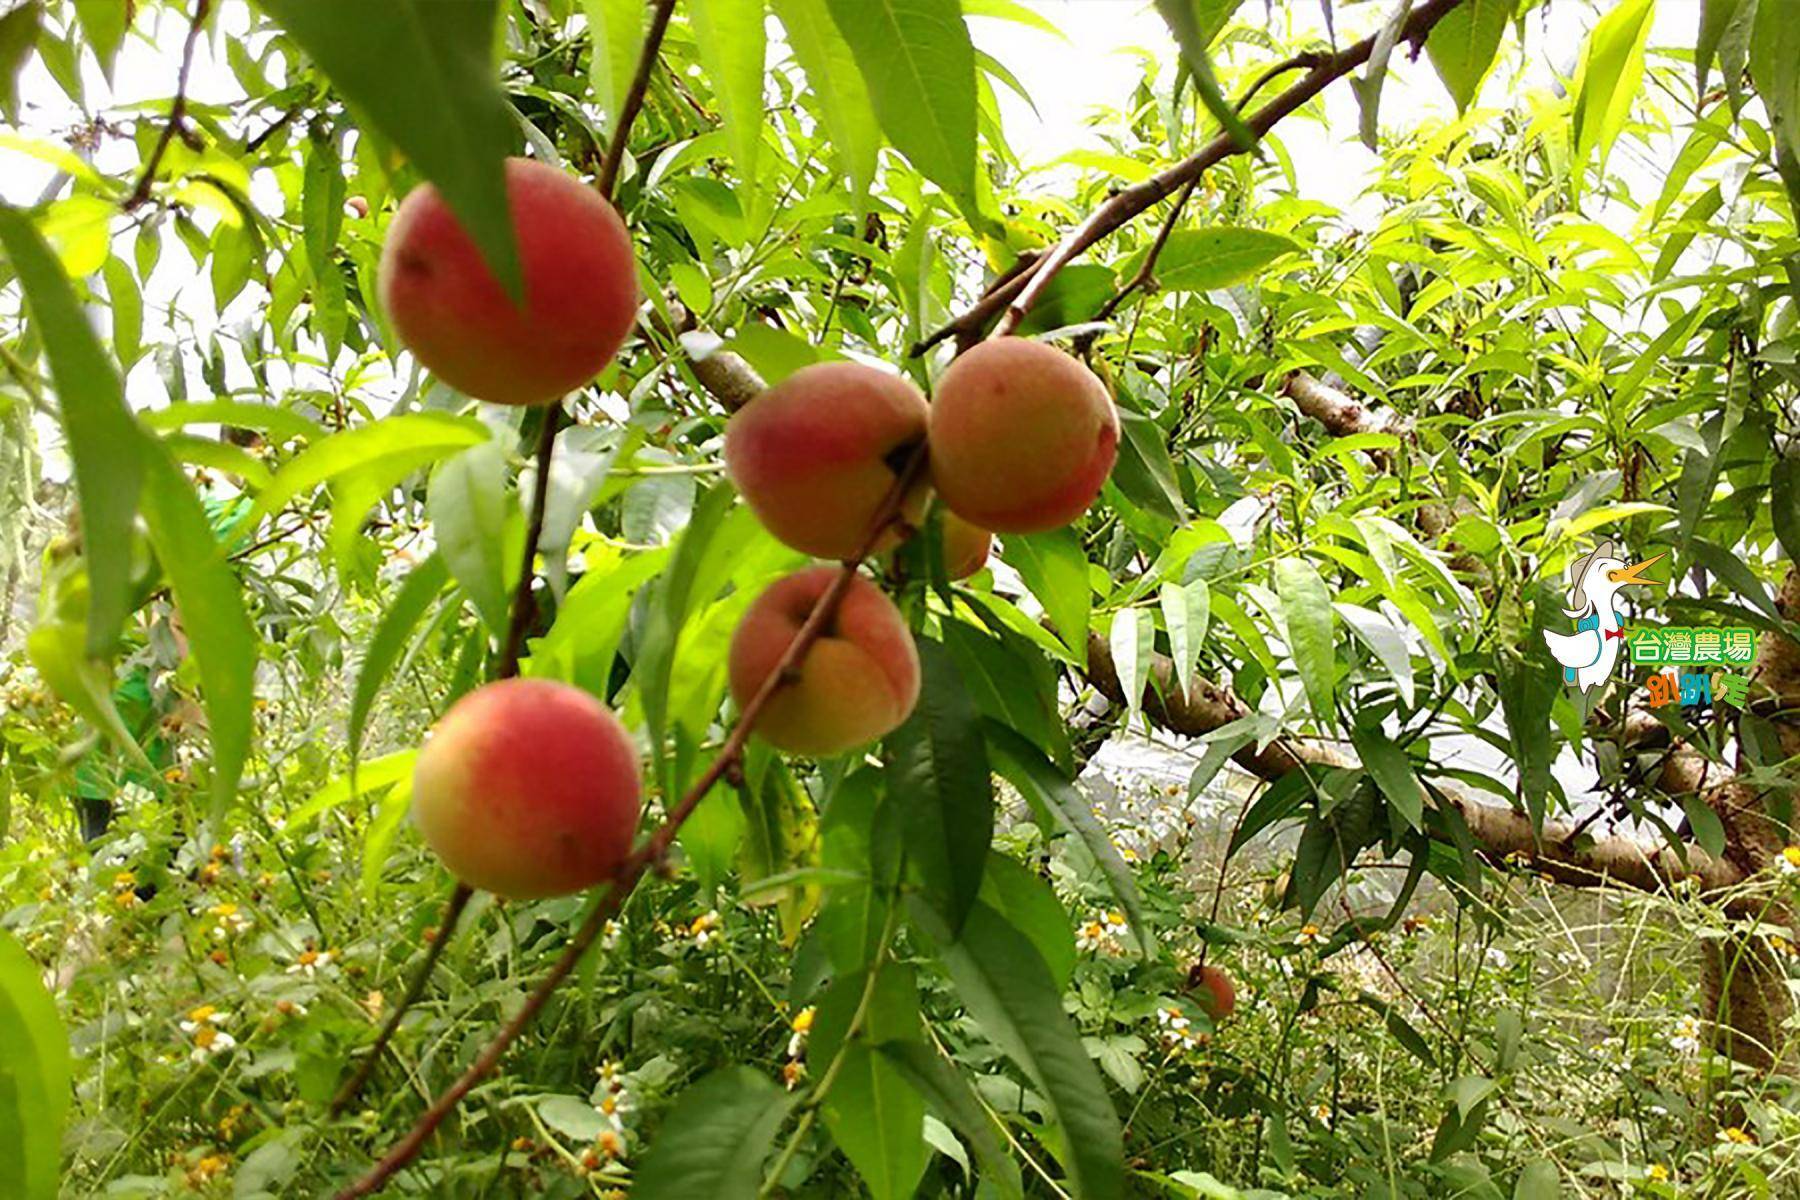 台中-擁葉生態農場-採果(水蜜桃、梨、甜柿)體驗券2